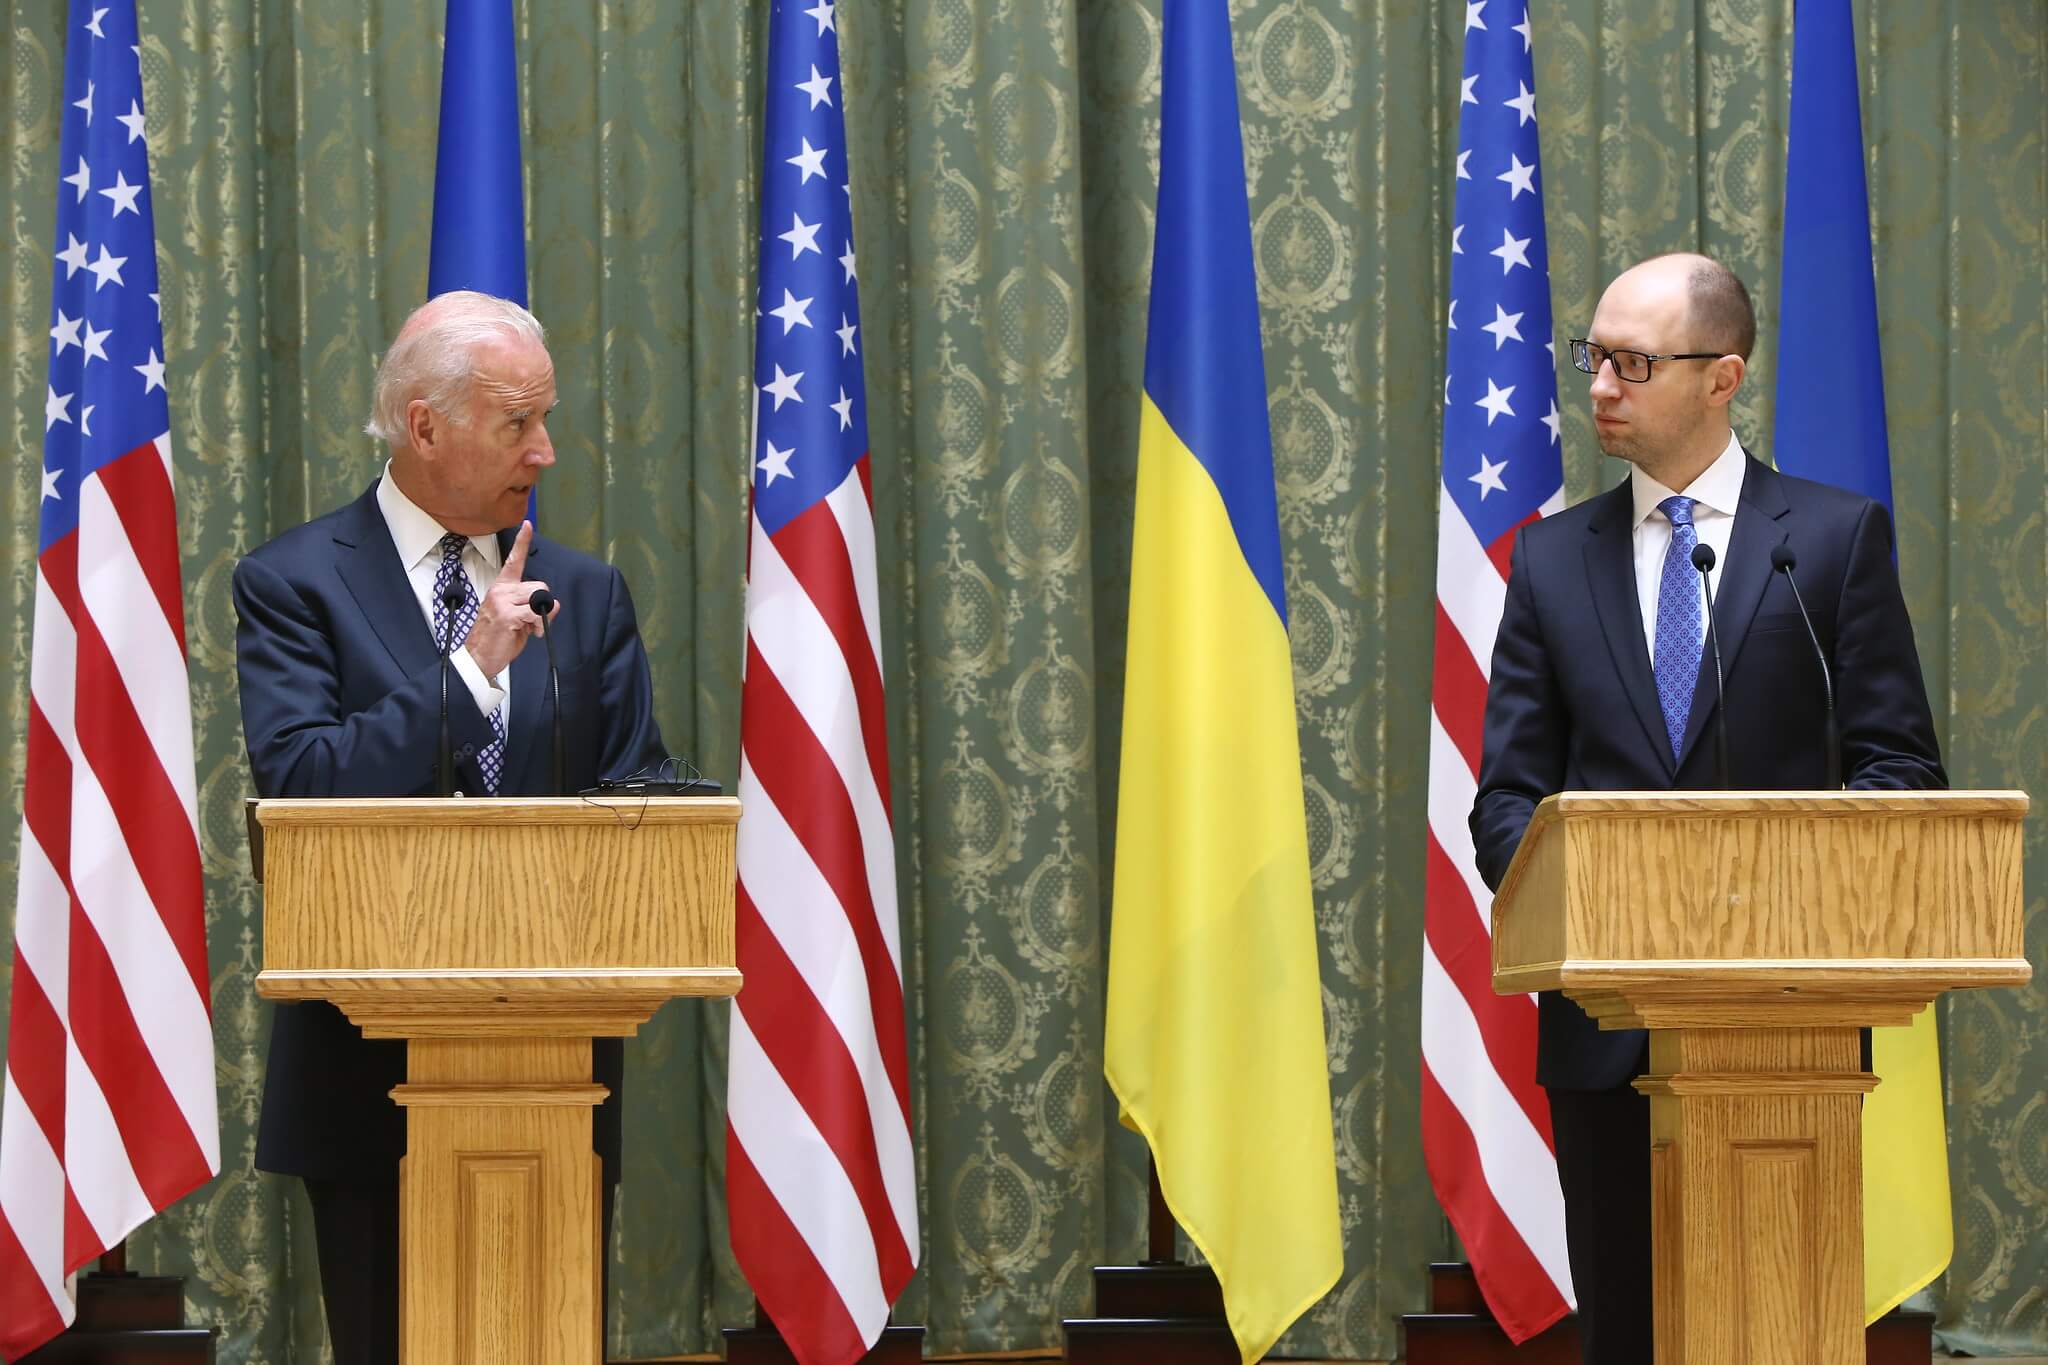 Kuzio-VP Biden and PM Yatsenyuk, Joint Statement, Kyiv, Ukriane, April 22, 2014 - U.S. Embassy Kyiv Ukraine